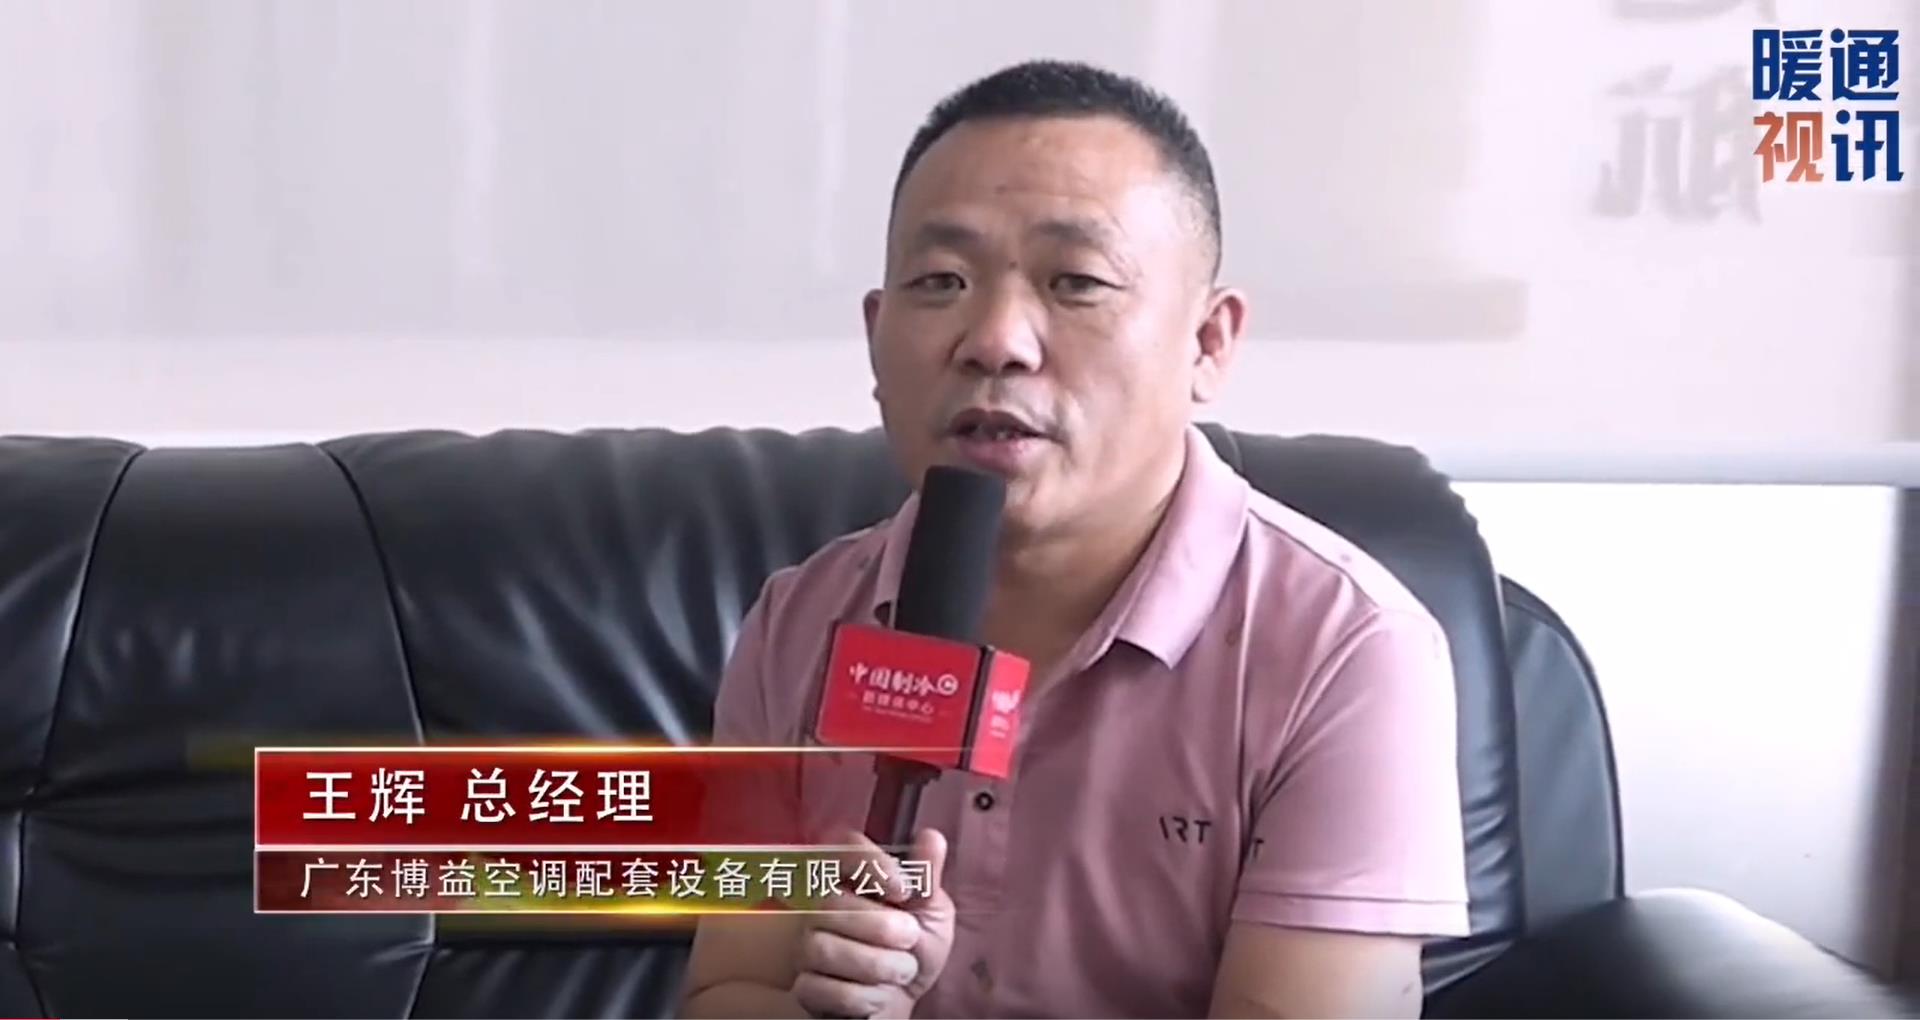 回顾博益空调总经理王辉接受《中国制冷与暖通空调》杂志社采访